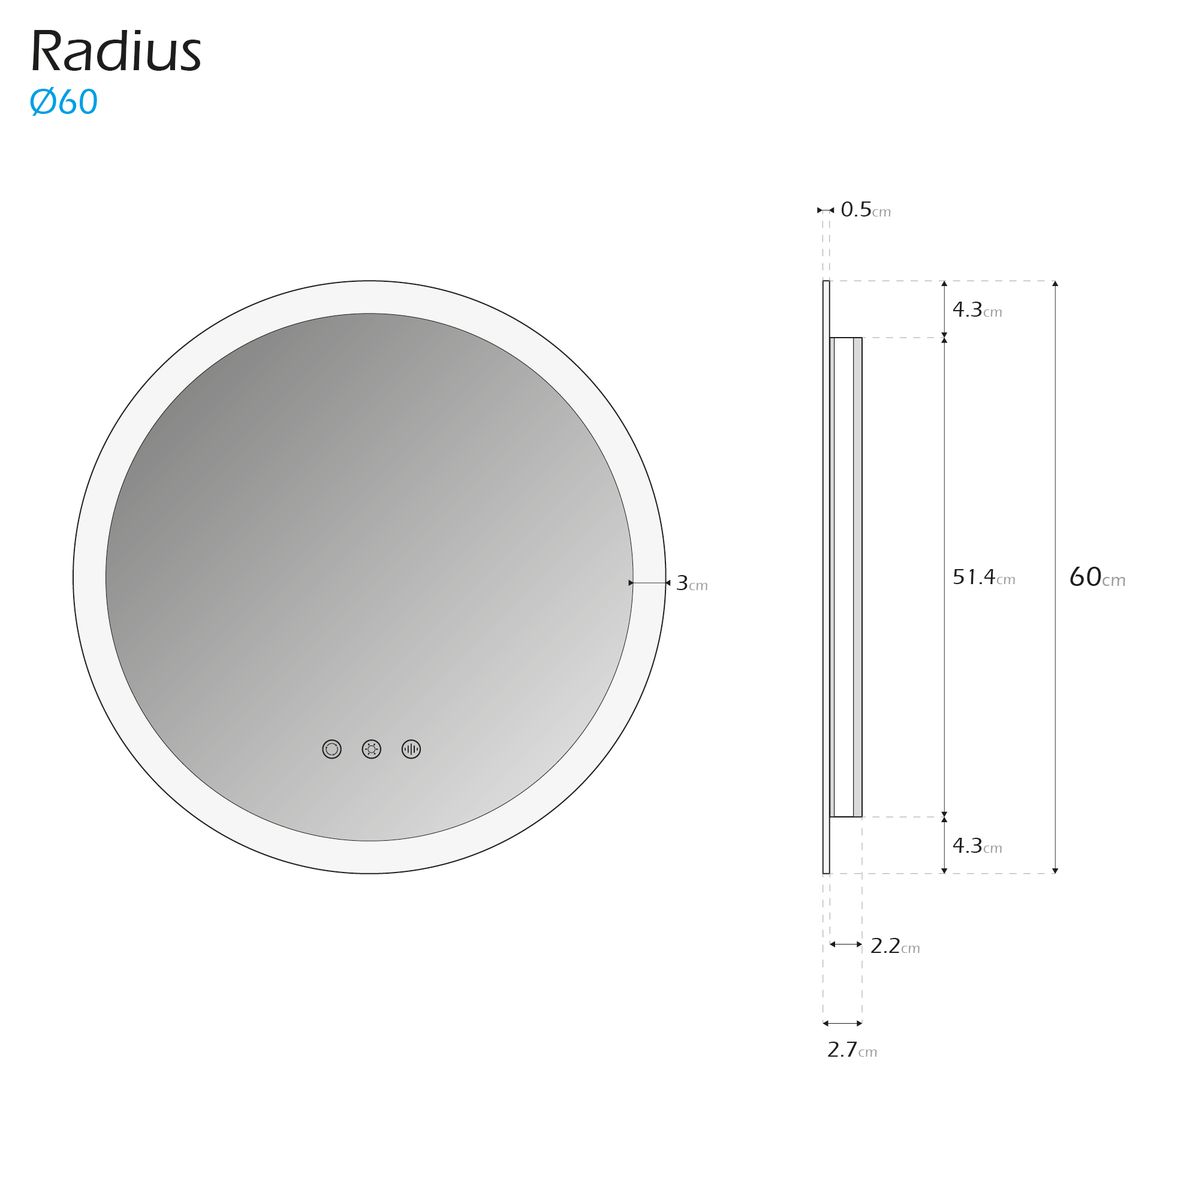 Runder LED Badspiegel RADIUS Badezimmerspiegel mit dimmbarer Beleuchtung, Farbwechsel und Antibeschlag-Funktion IP44